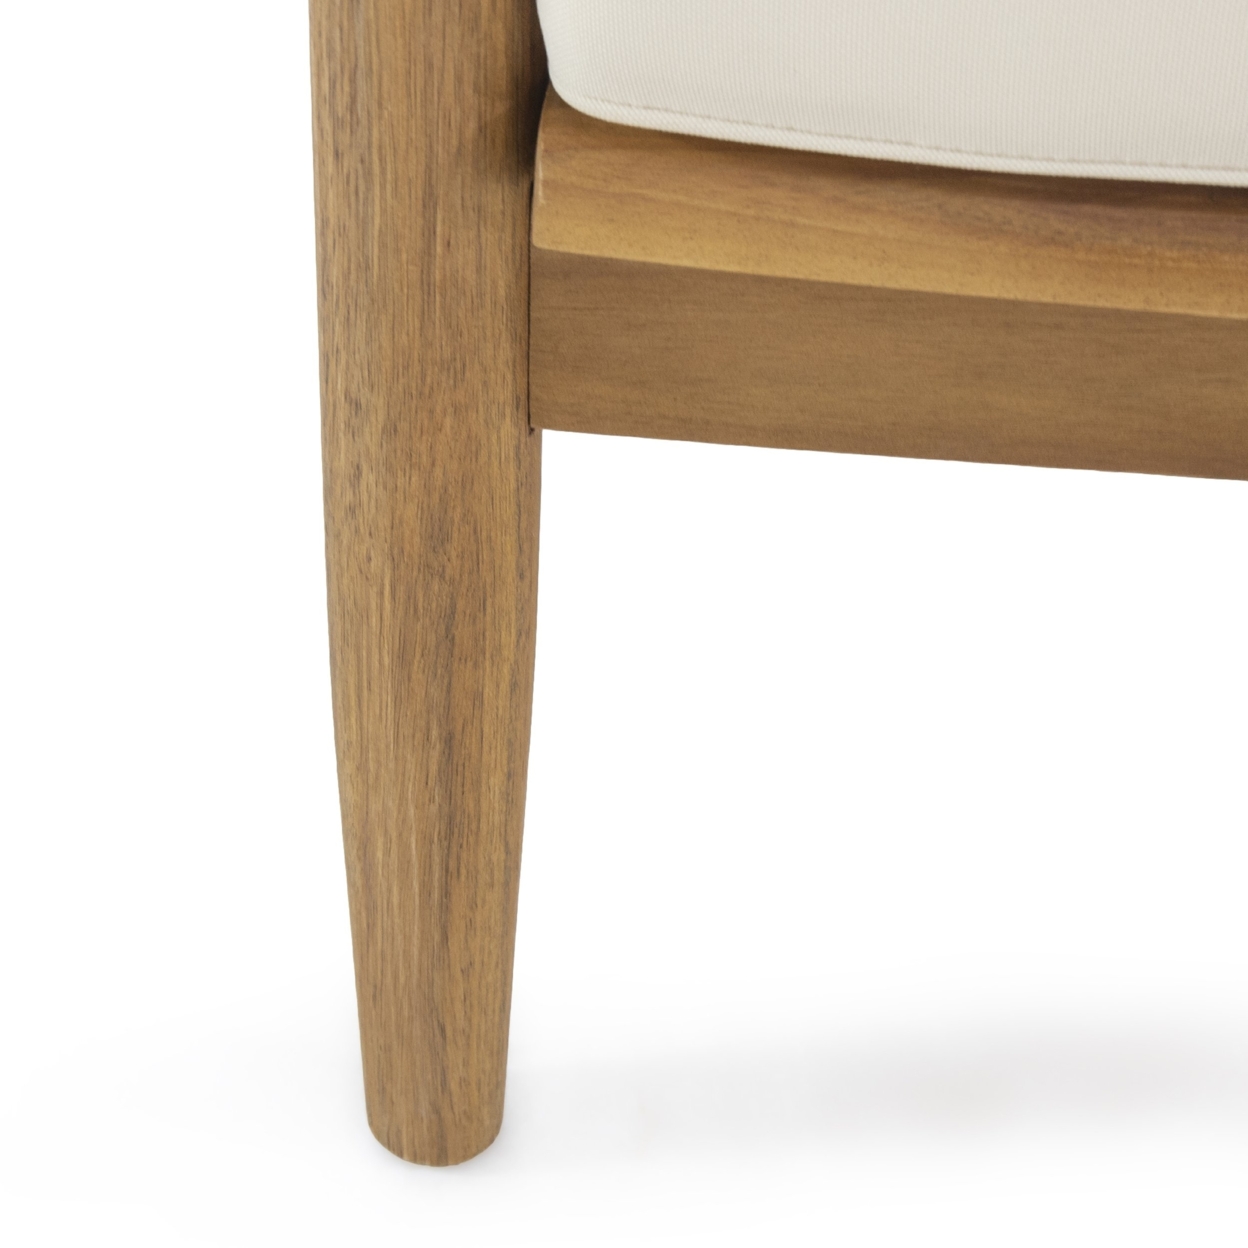 Emmry Outdoor Acacia Wood Club Chair, Set Of 2 - Teak/beige